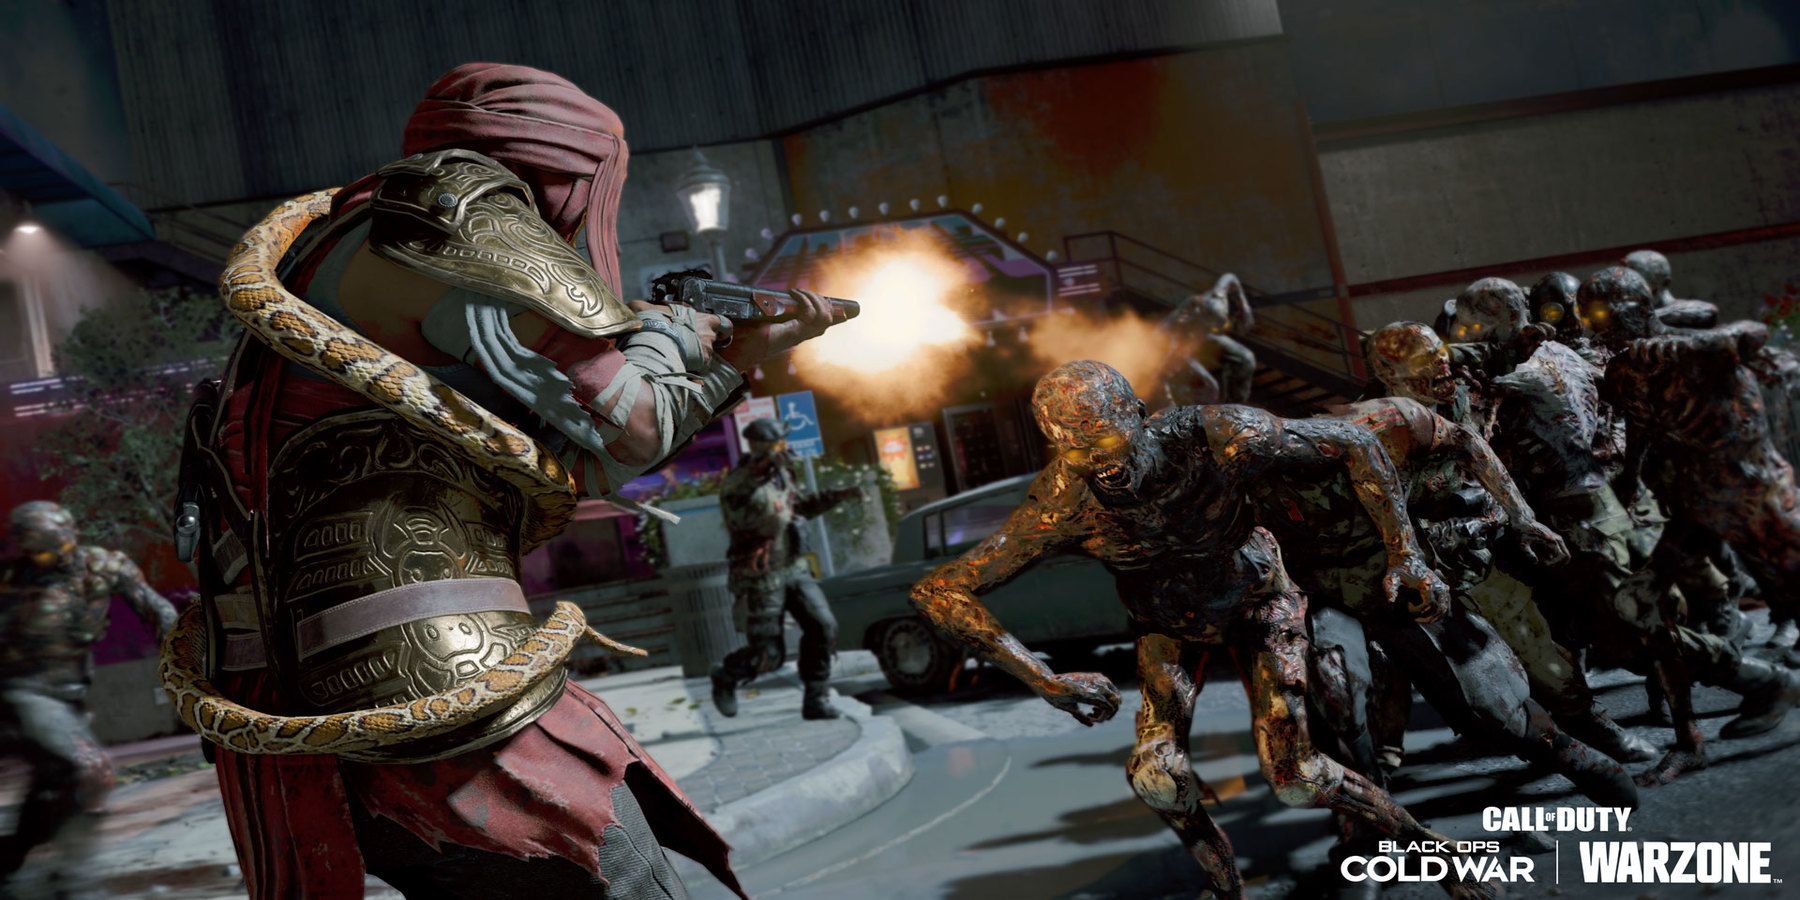 Call of Duty: Black Ops Зомби холодной войны — все, что мы знаем о Forsaken